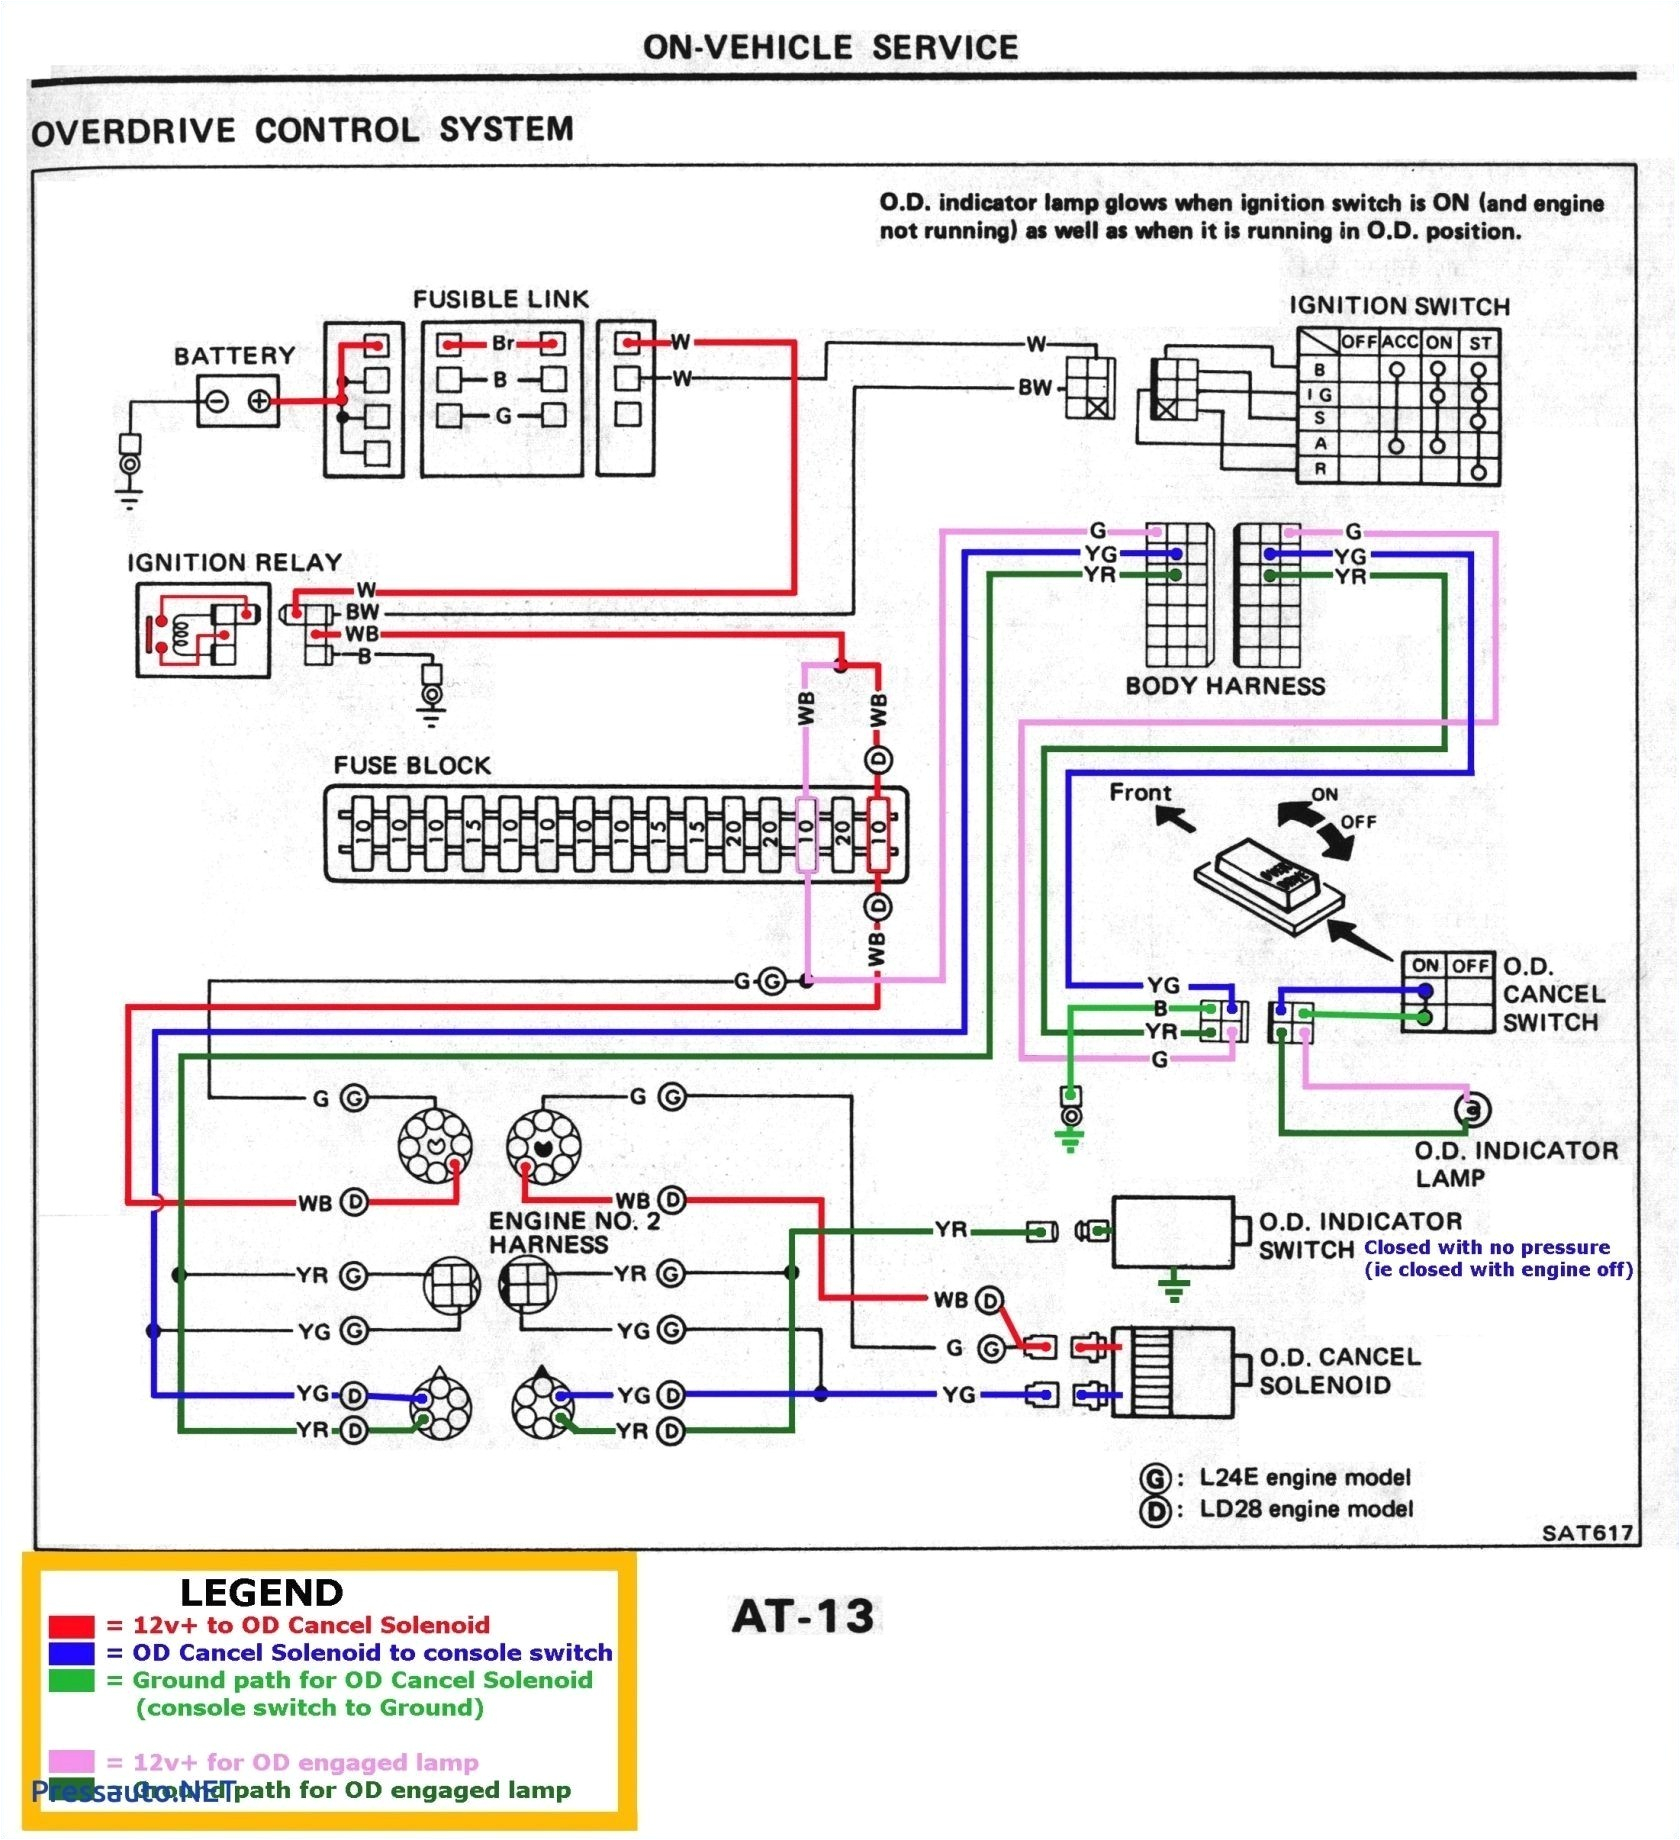 home wiring cat 5 diagrams just wiring diagramcat 5 wiring diagram manual e book cat 5